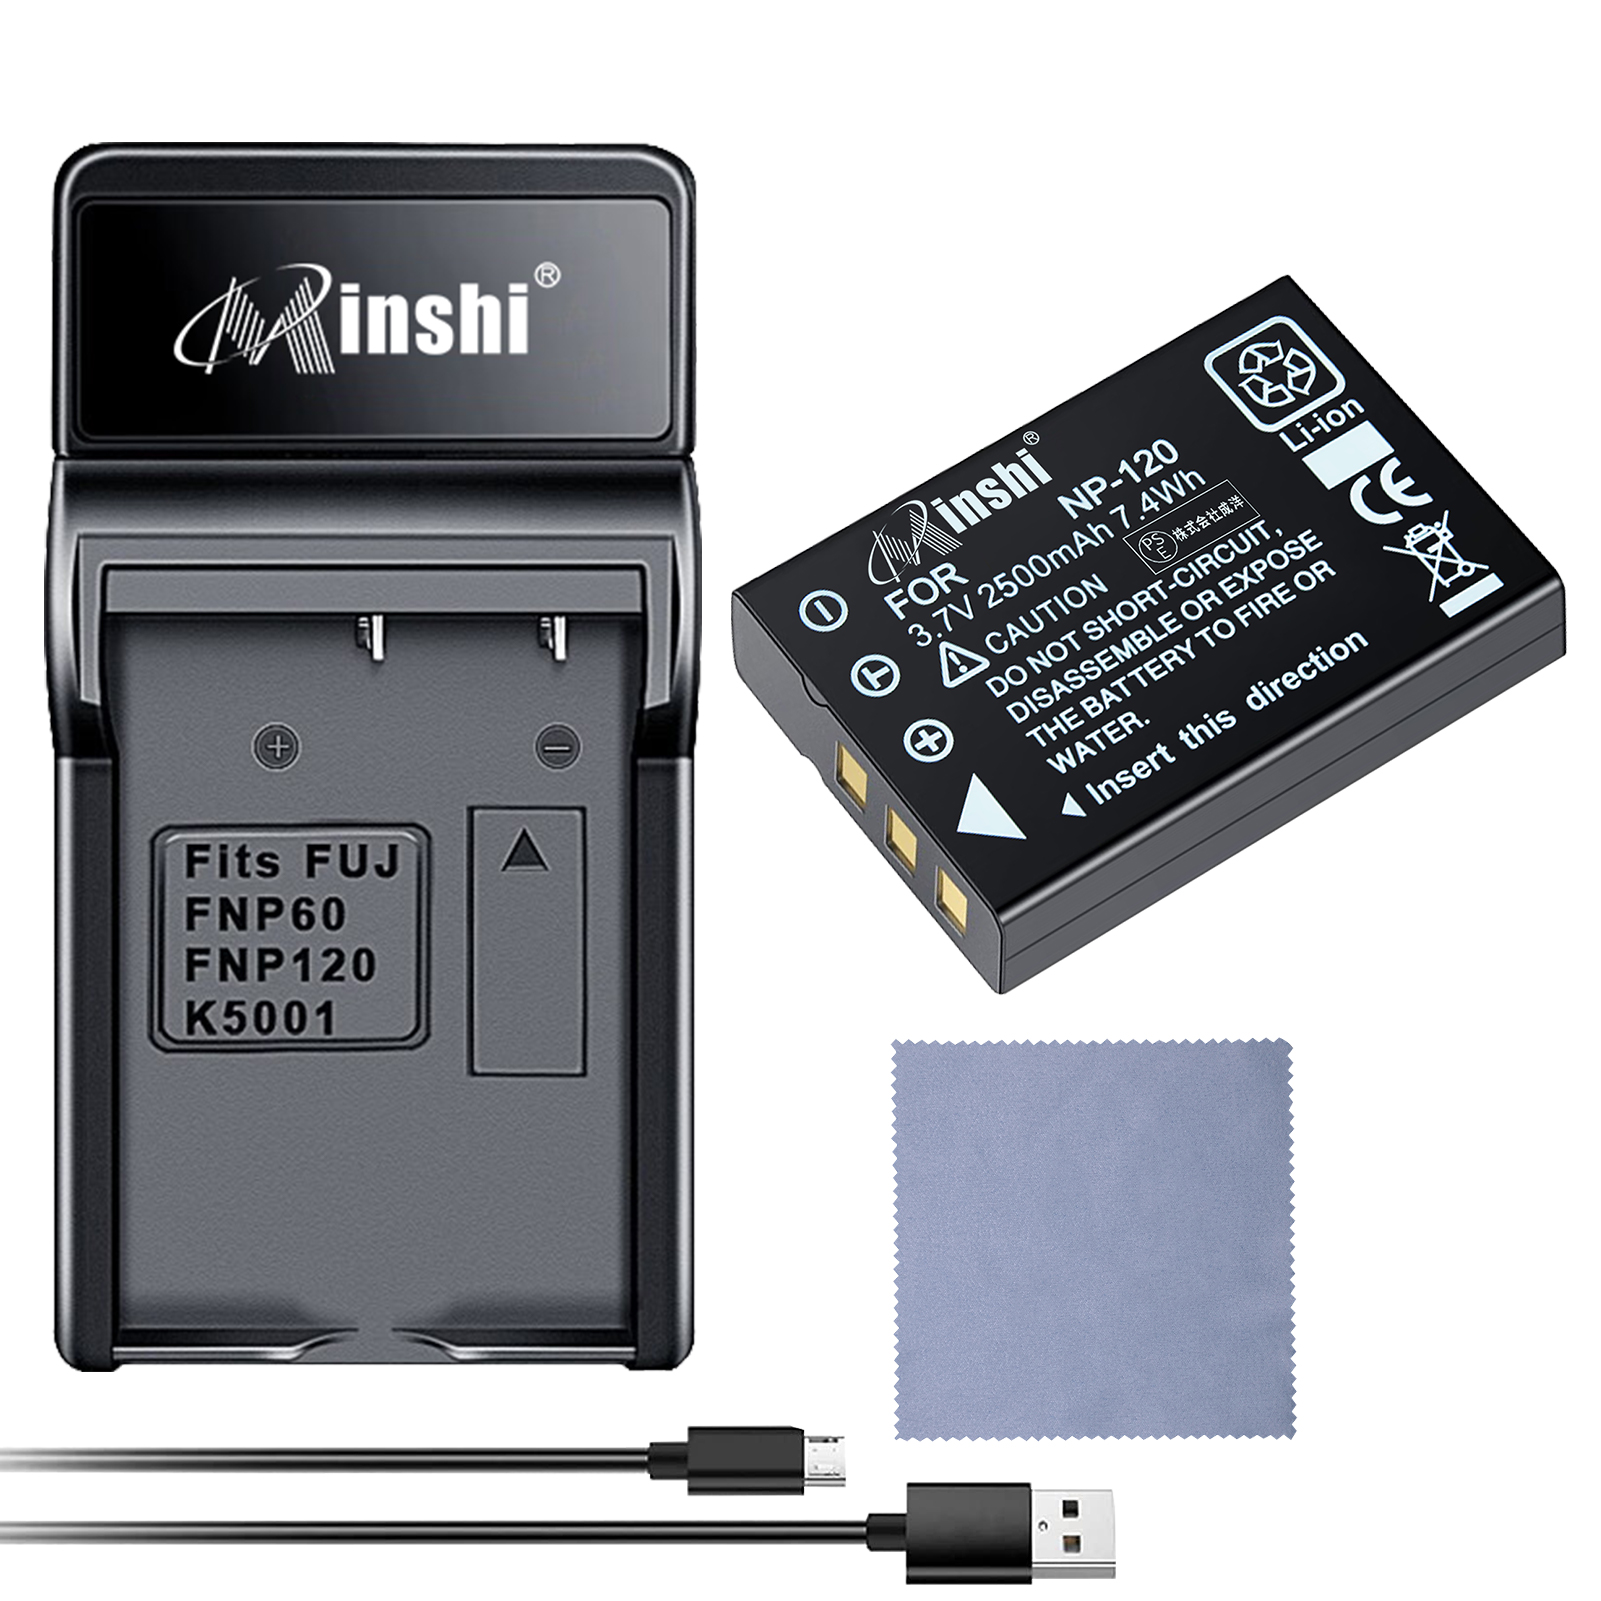 【セット】minshi FUJIFILM Caplio G3 NP-120 【2500mAh 3.7V】PSE認定済 高品質交換用バッテリー